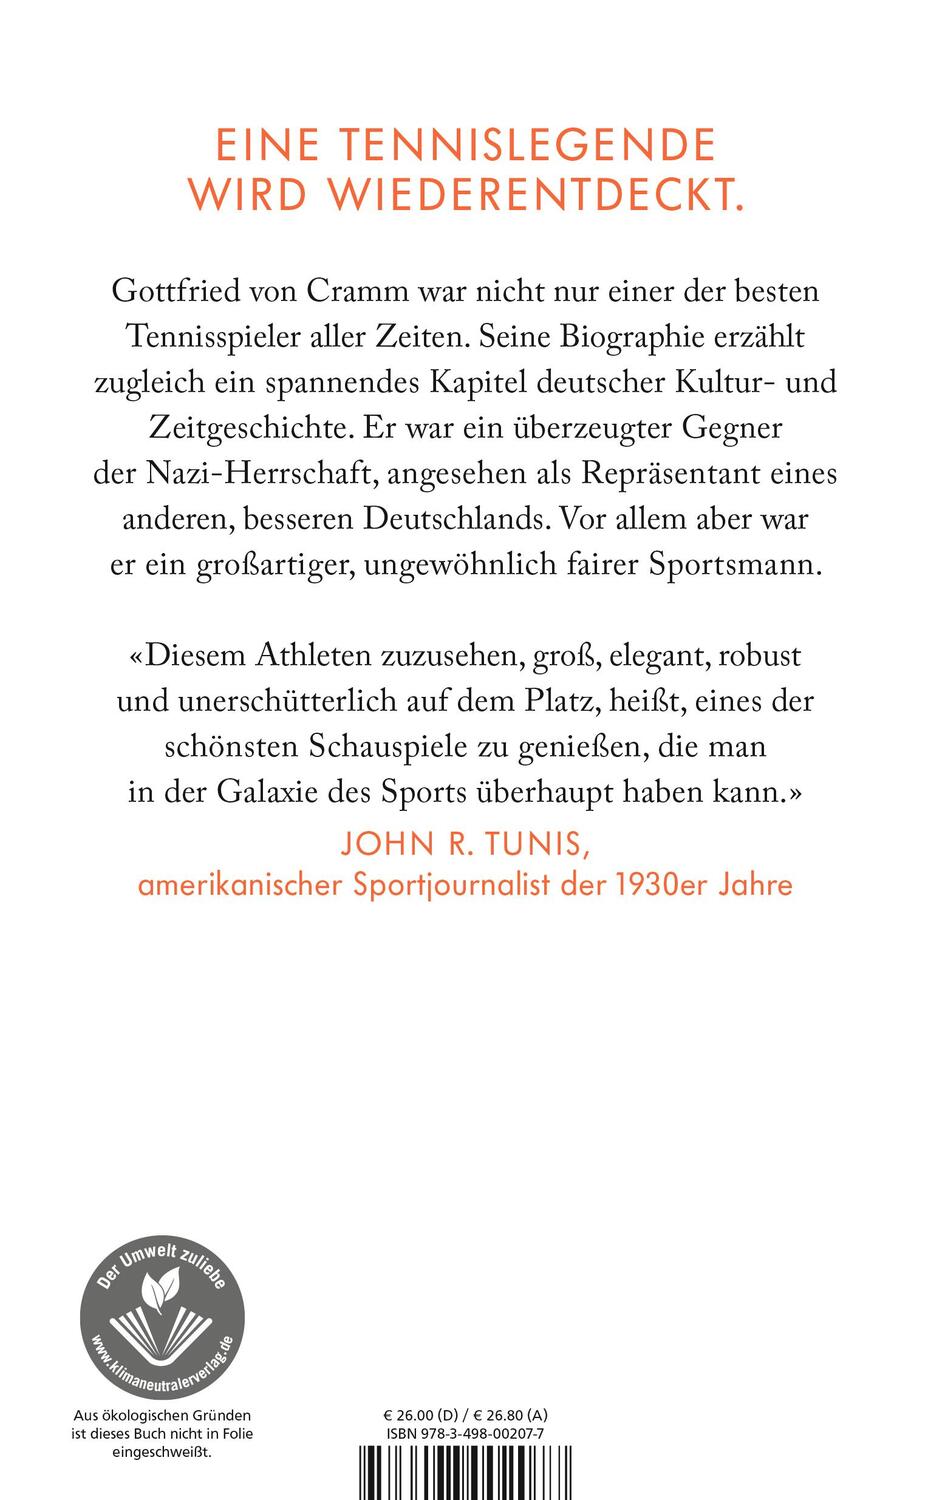 Rückseite: 9783498002077 | Der schöne Deutsche | Das Leben des Gottfried von Cramm | Jens Nordalm